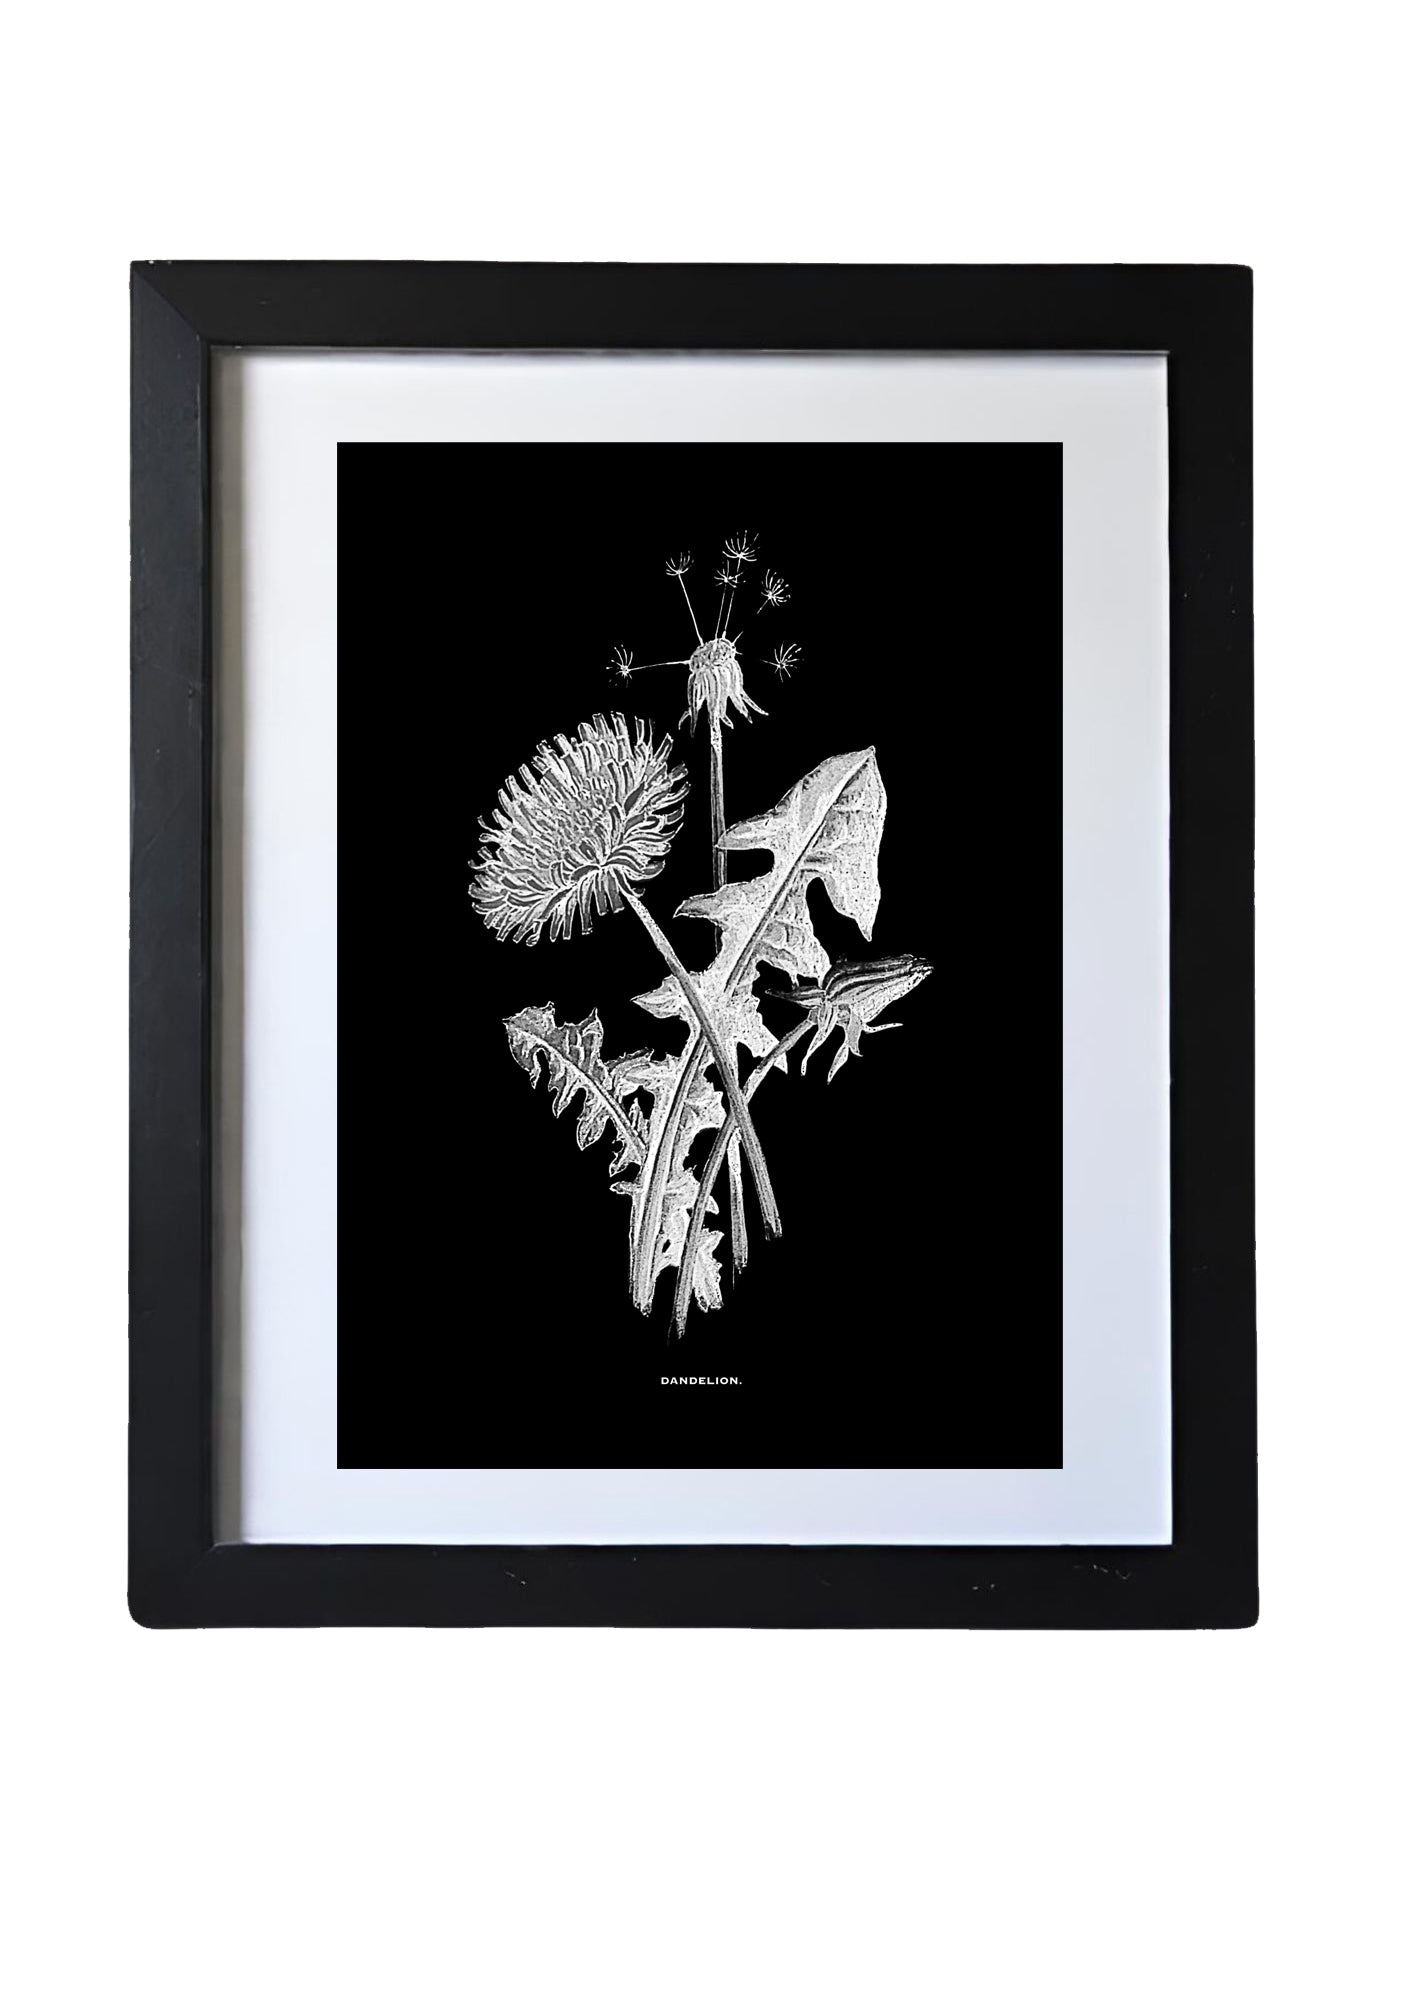 Black & White Framed Vintage Botanical Floral Art Prints: Set Of Nine